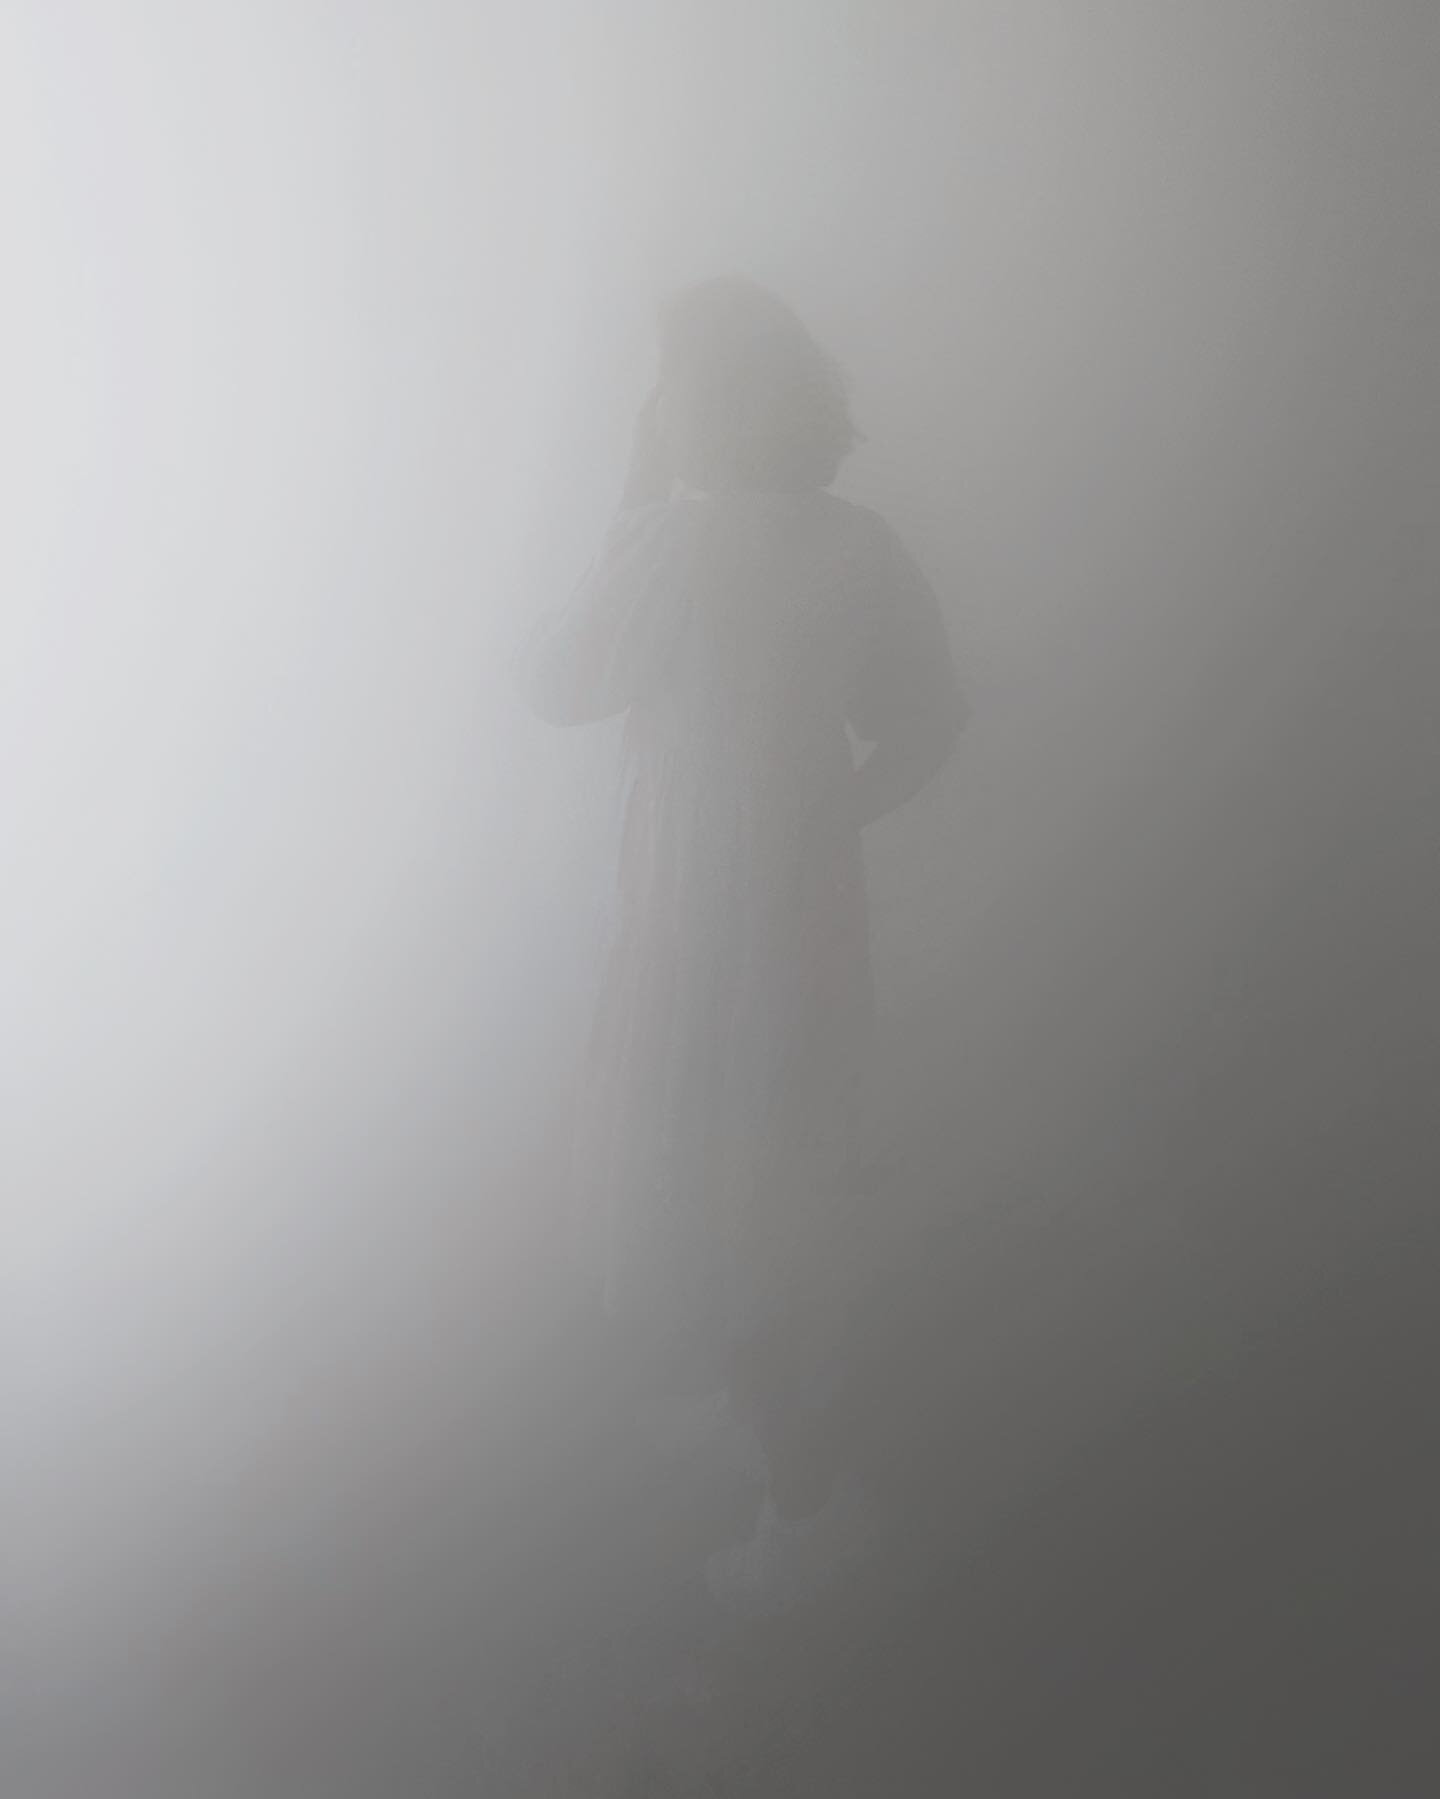 into the fog we go